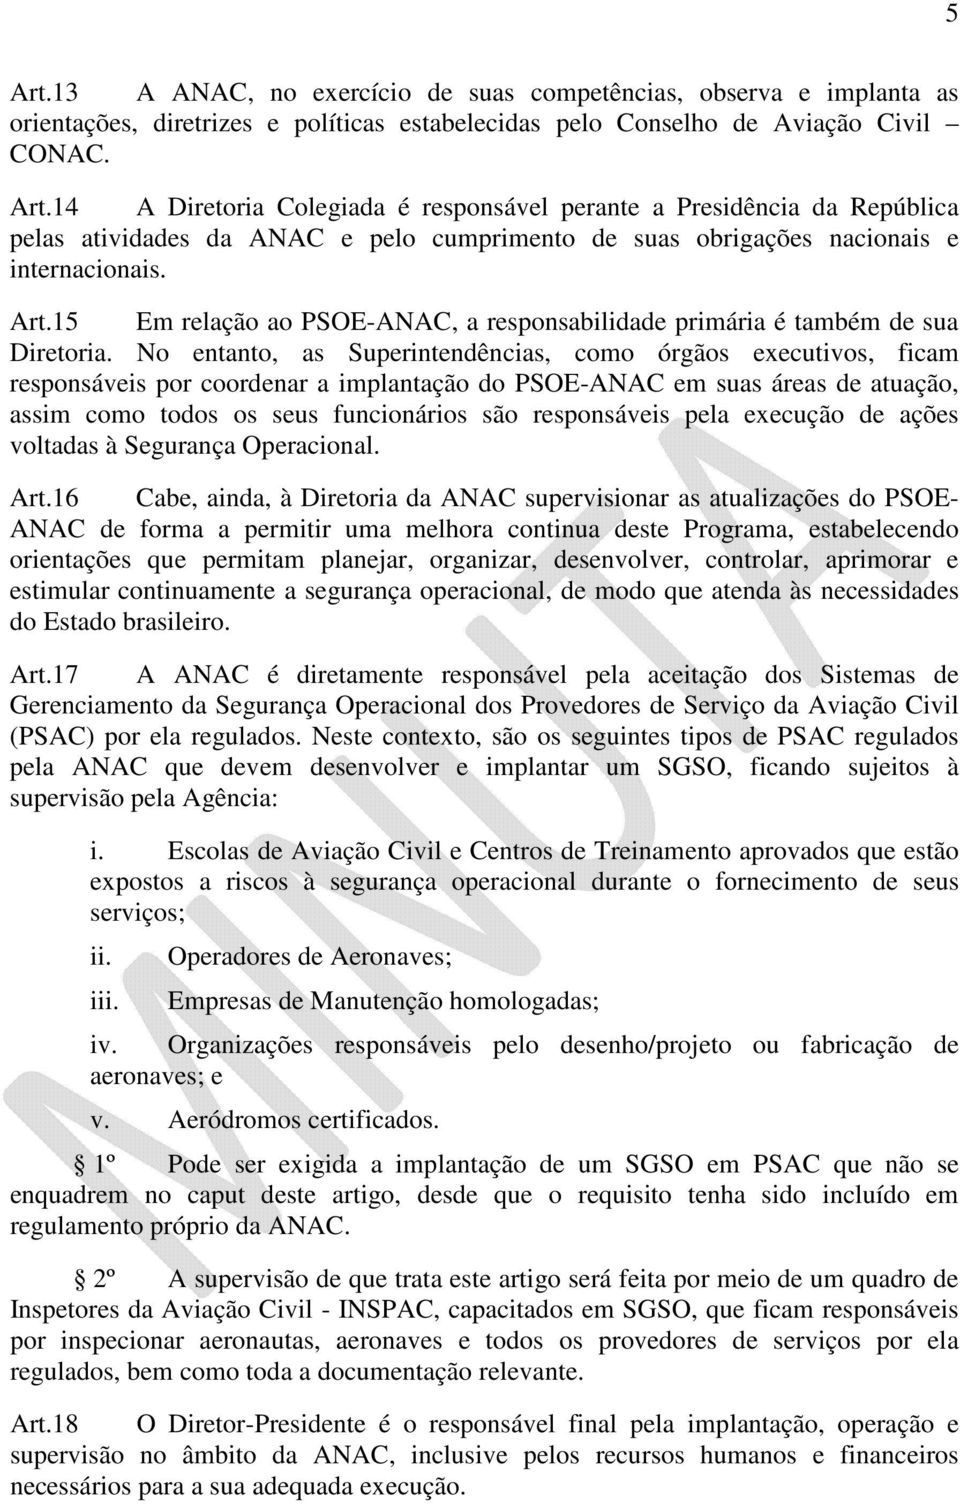 No entanto, as Superintendências, como órgãos executivos, ficam responsáveis por coordenar a implantação do PSOE-ANAC em suas áreas de atuação, assim como todos os seus funcionários são responsáveis